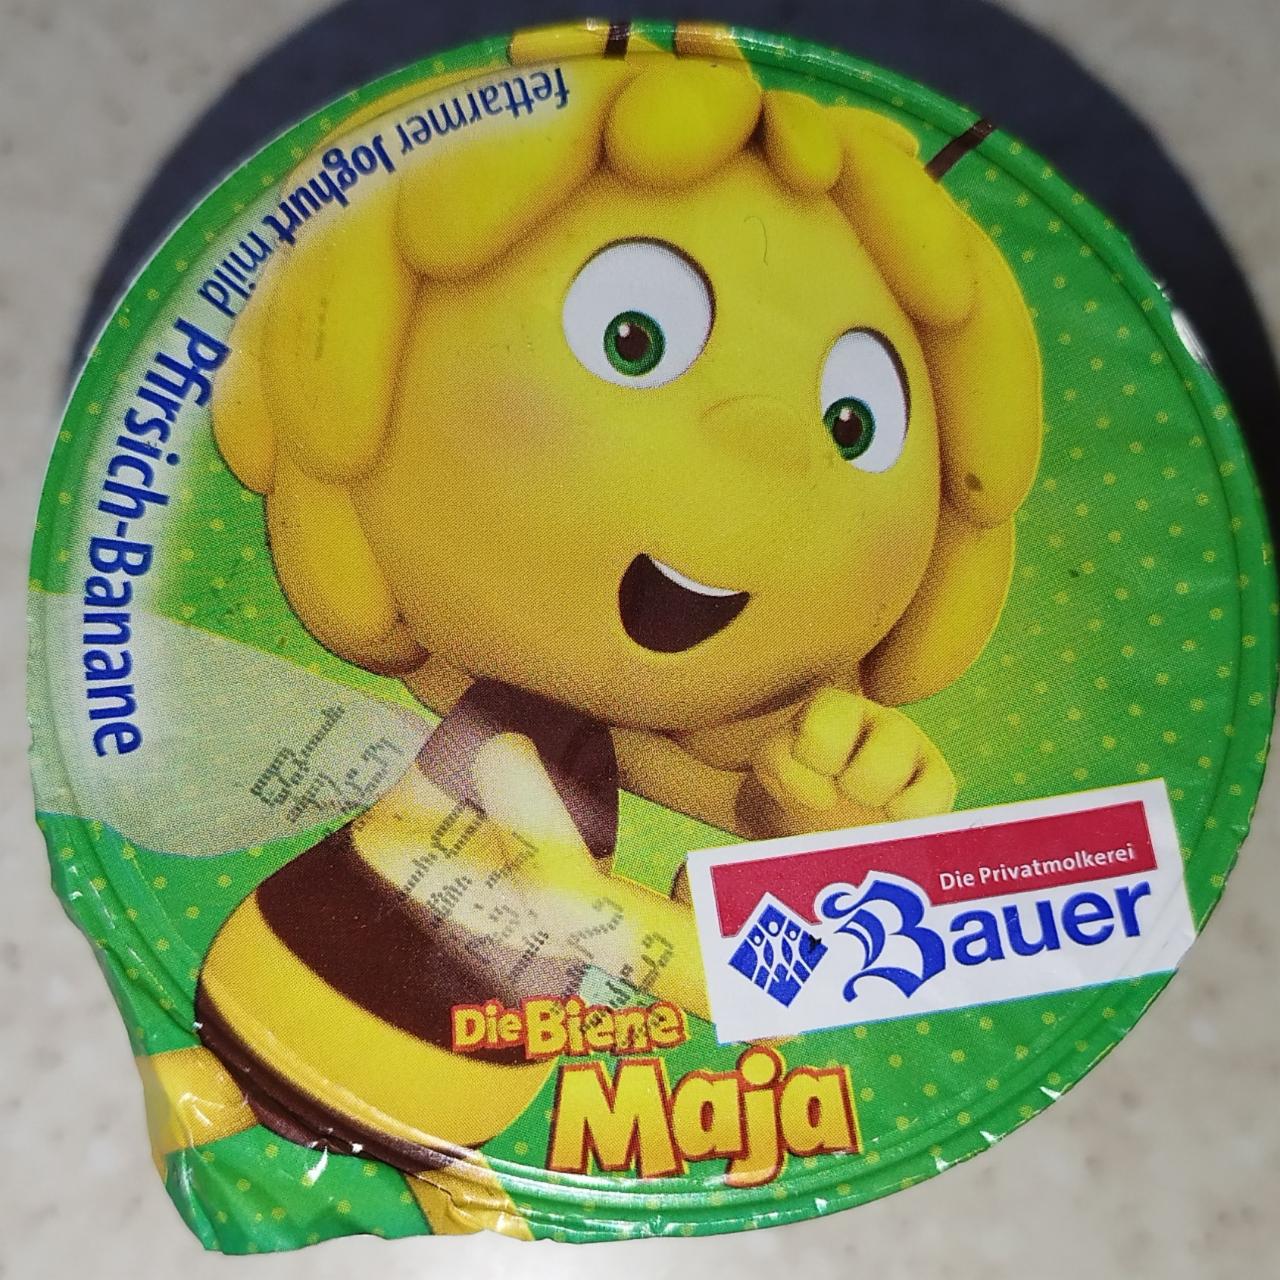 Фото - М'який фруктовий йогурт персик-банан Bauer